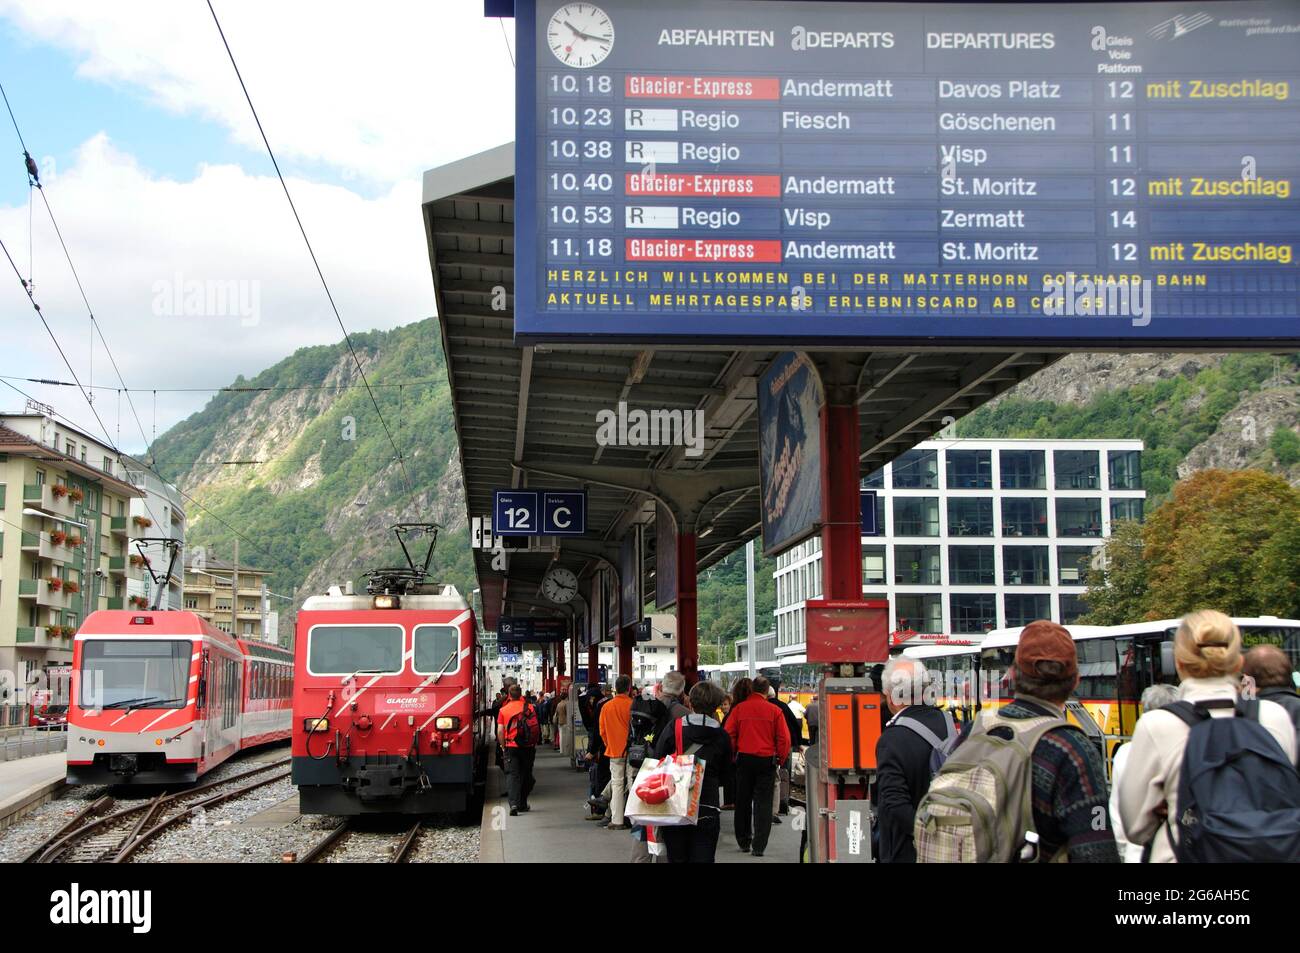 Der Glacier Express fährt von Zermatt quer durch die Alpen via Brig, Andermatt - Disentis - Chur durch das Unesco Weltkulturerbe nach St. Moritz. The Stock Photo